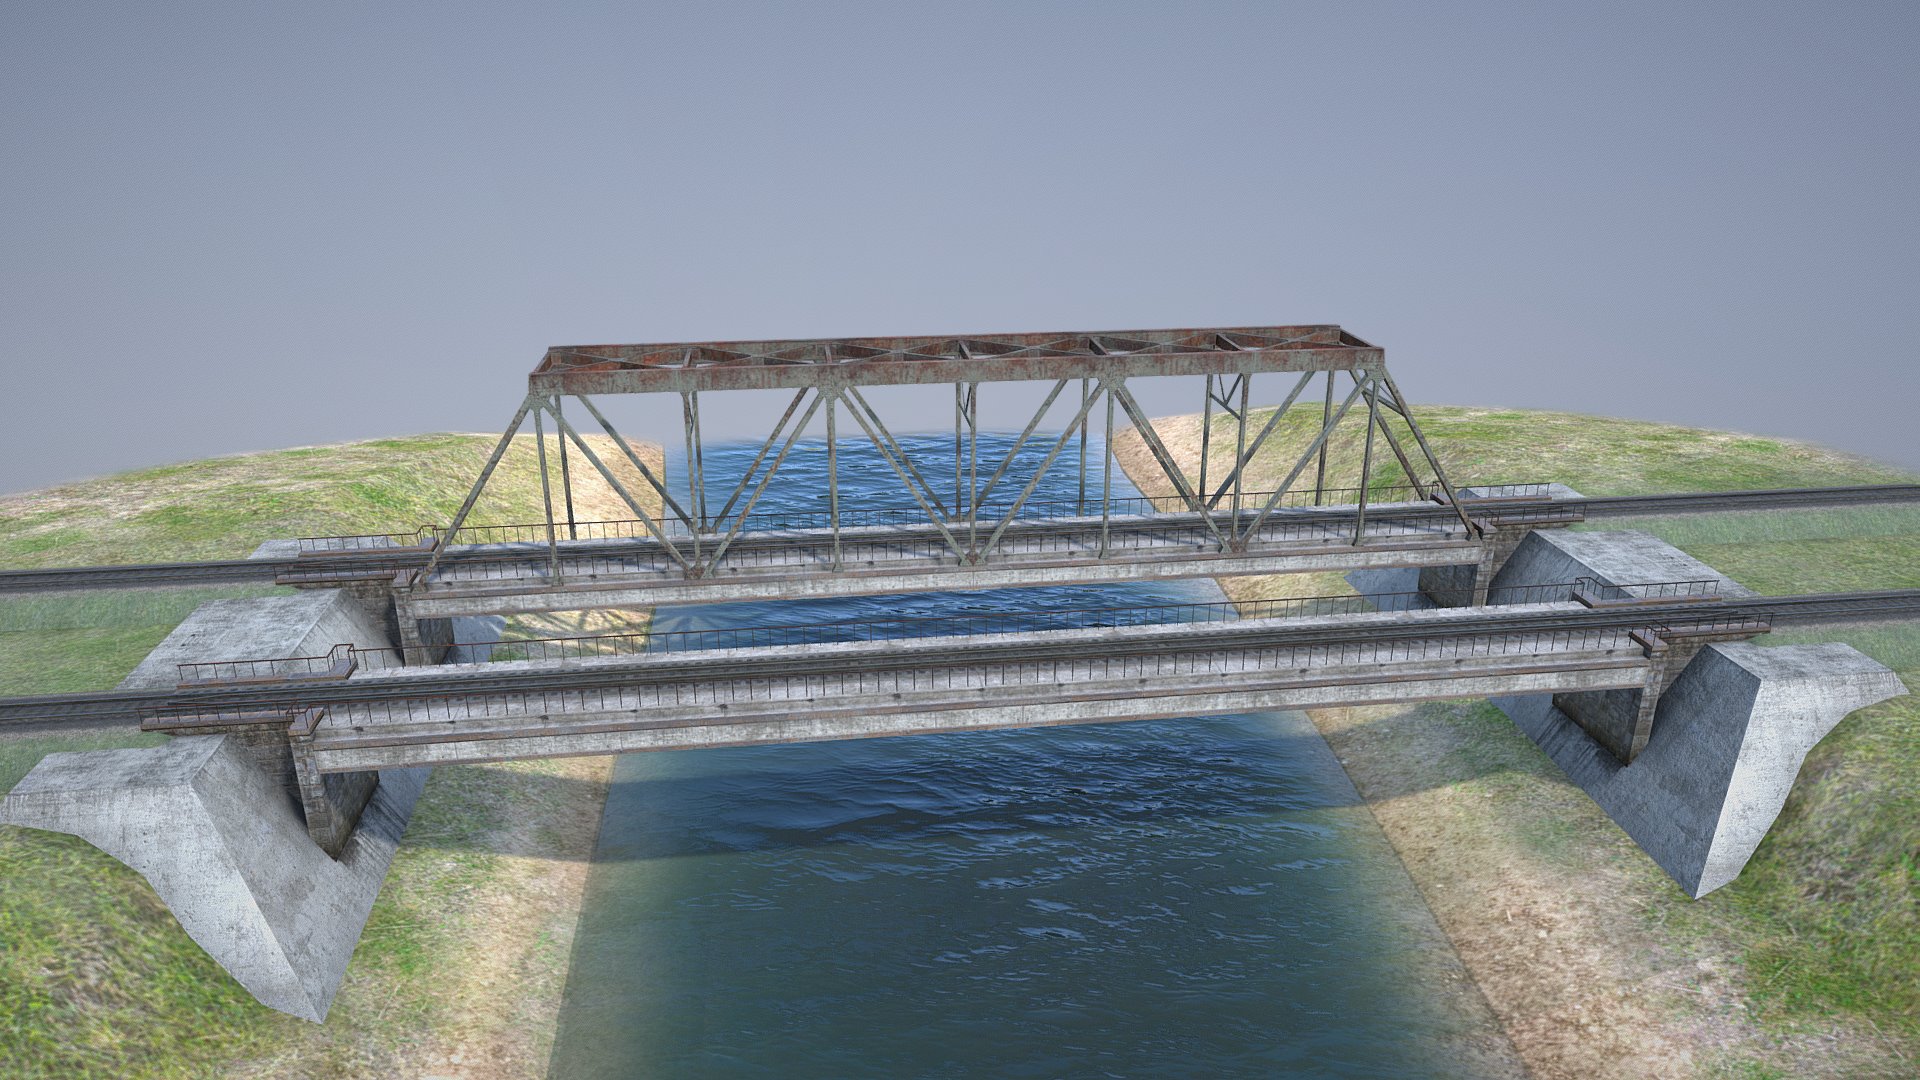 3D model RW Bridge Vologda II - This is a 3D model of the RW Bridge Vologda II. The 3D model is about a bridge over a body of water.